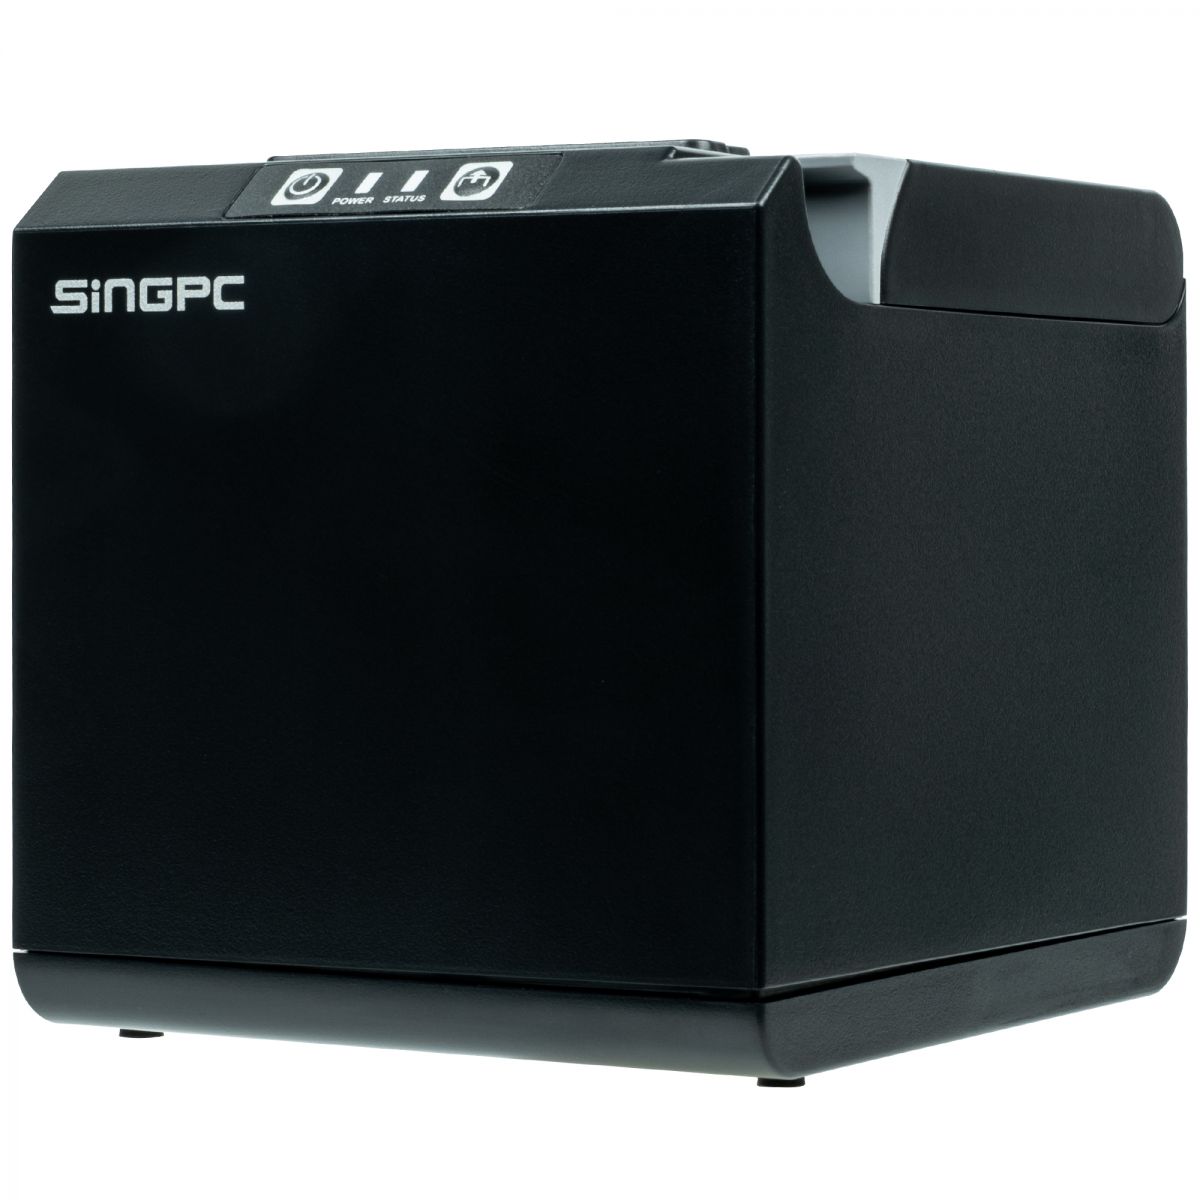 Máy in hóa đơn nhiệt khổ 58mm SingPC Print-211